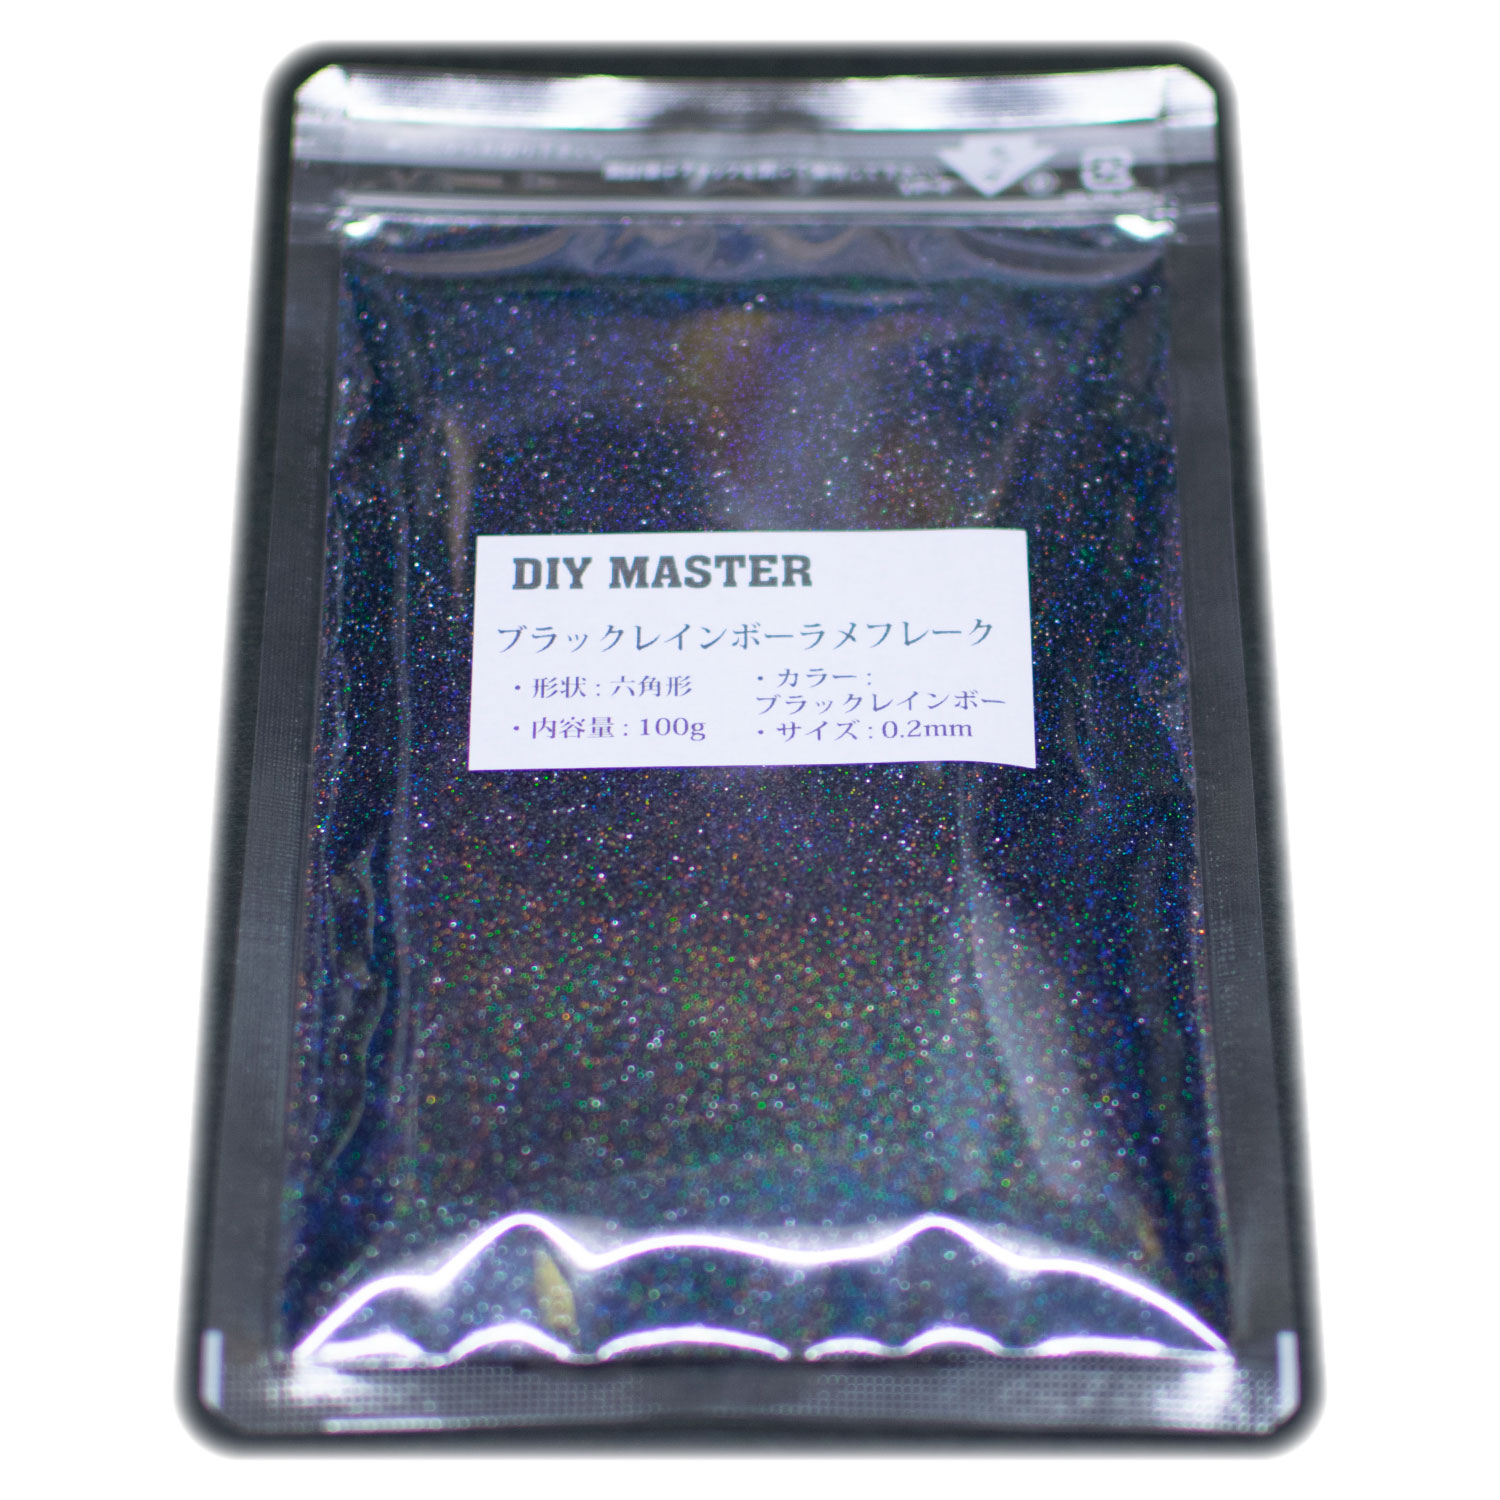 店内全品対象 DIY MASTER レインボー ラメ フレーク ロング 0.2mmx1.5mm 小 250g 検 塗料 スプレー ラメパウダー 